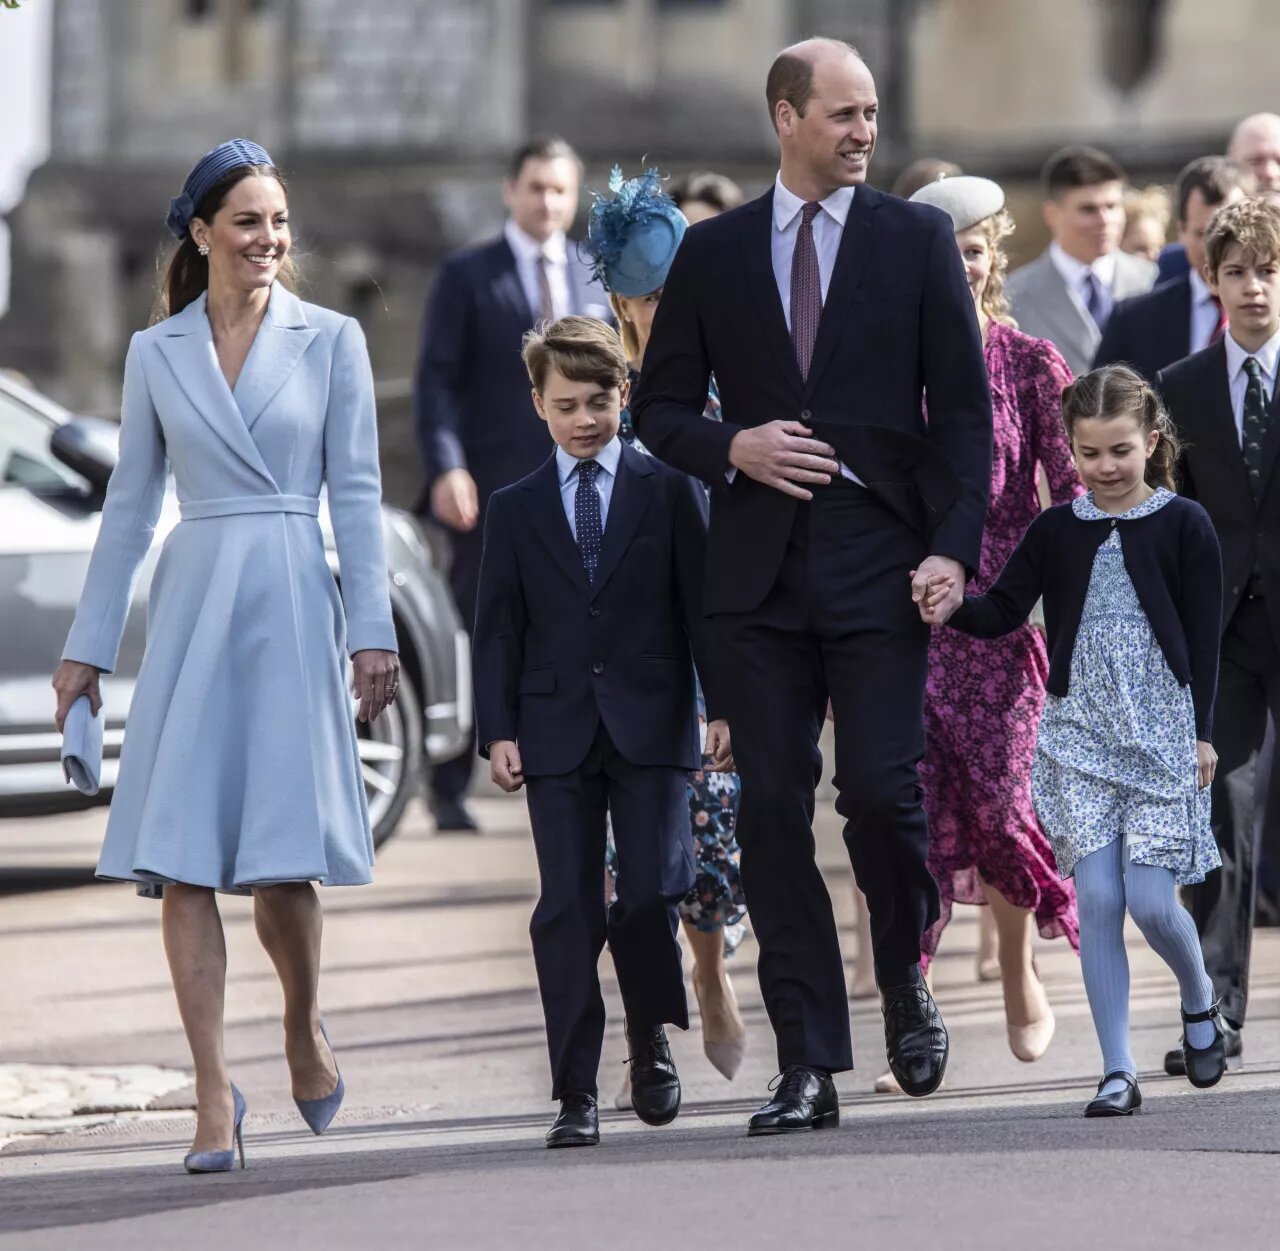  - Тонкий жест принца Уильяма и Кейт Миддлтон демонстрирует особое положение их старшего сына Джорджа